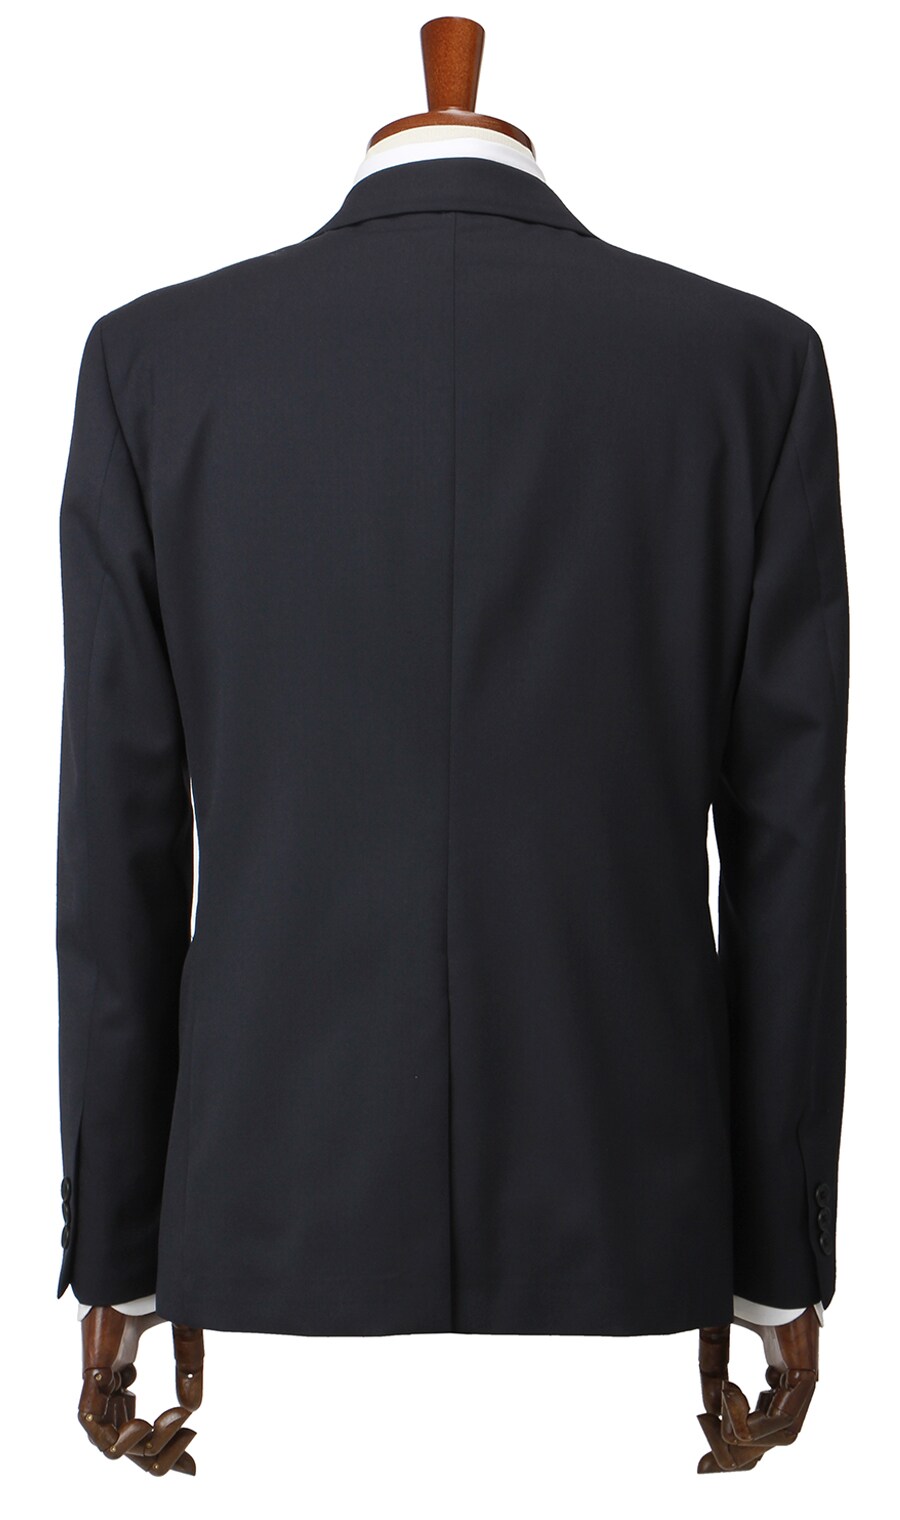 低価 春夏用 ブラック系 スタイリッシュスーツ MODA RITORNO 洋服の青山PLUS 通販 PayPayモール 